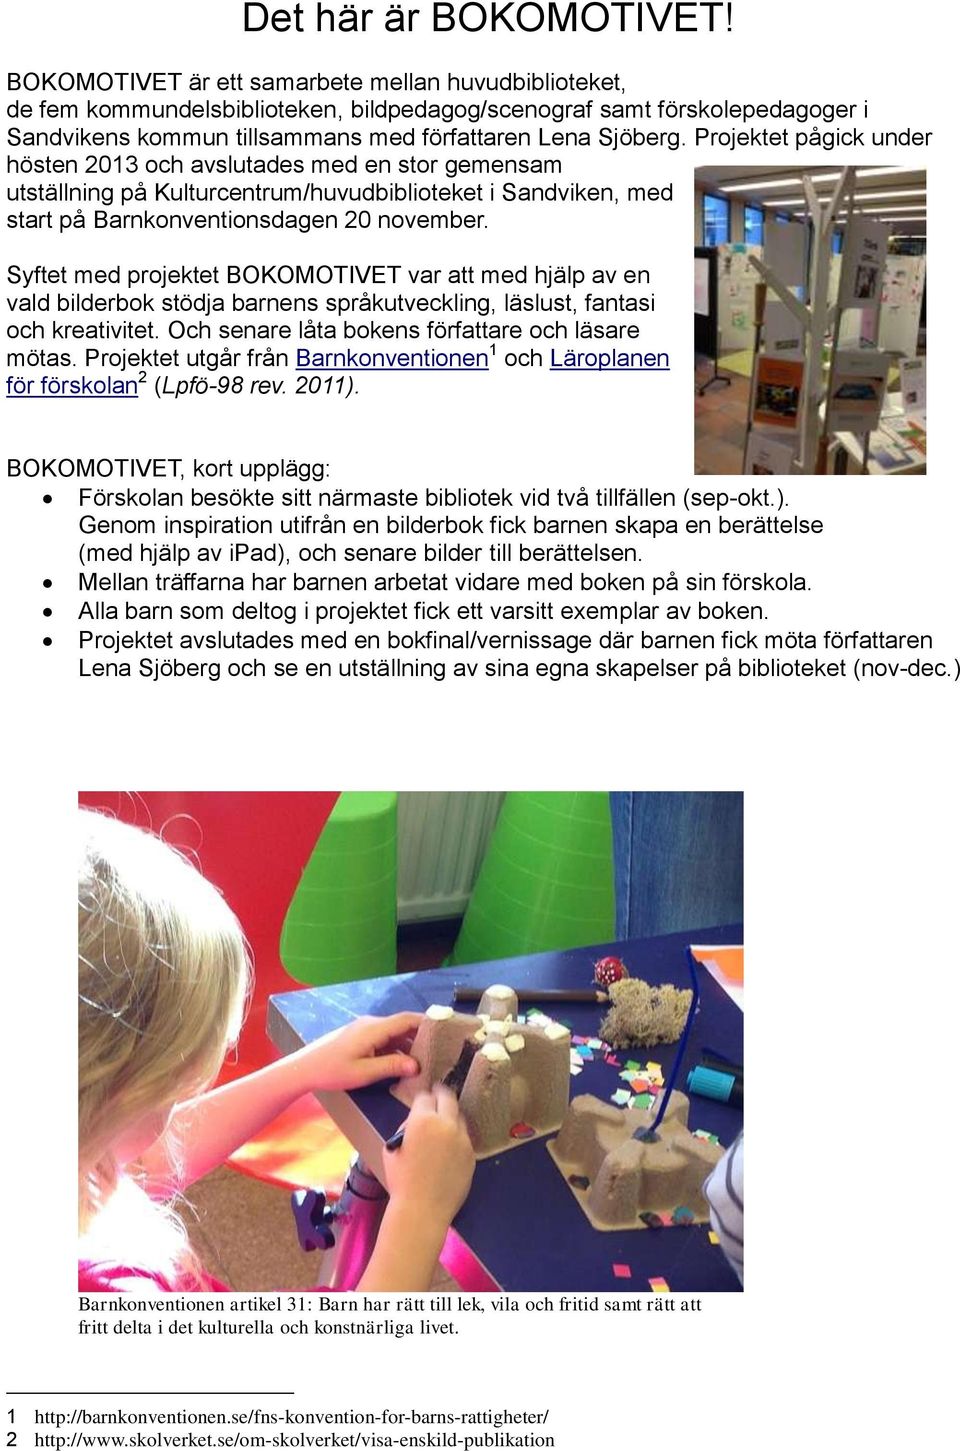 Projektet pågick under hösten 2013 och avslutades med en stor gemensam utställning på Kulturcentrum/huvudbiblioteket i Sandviken, med start på Barnkonventionsdagen 20 november.